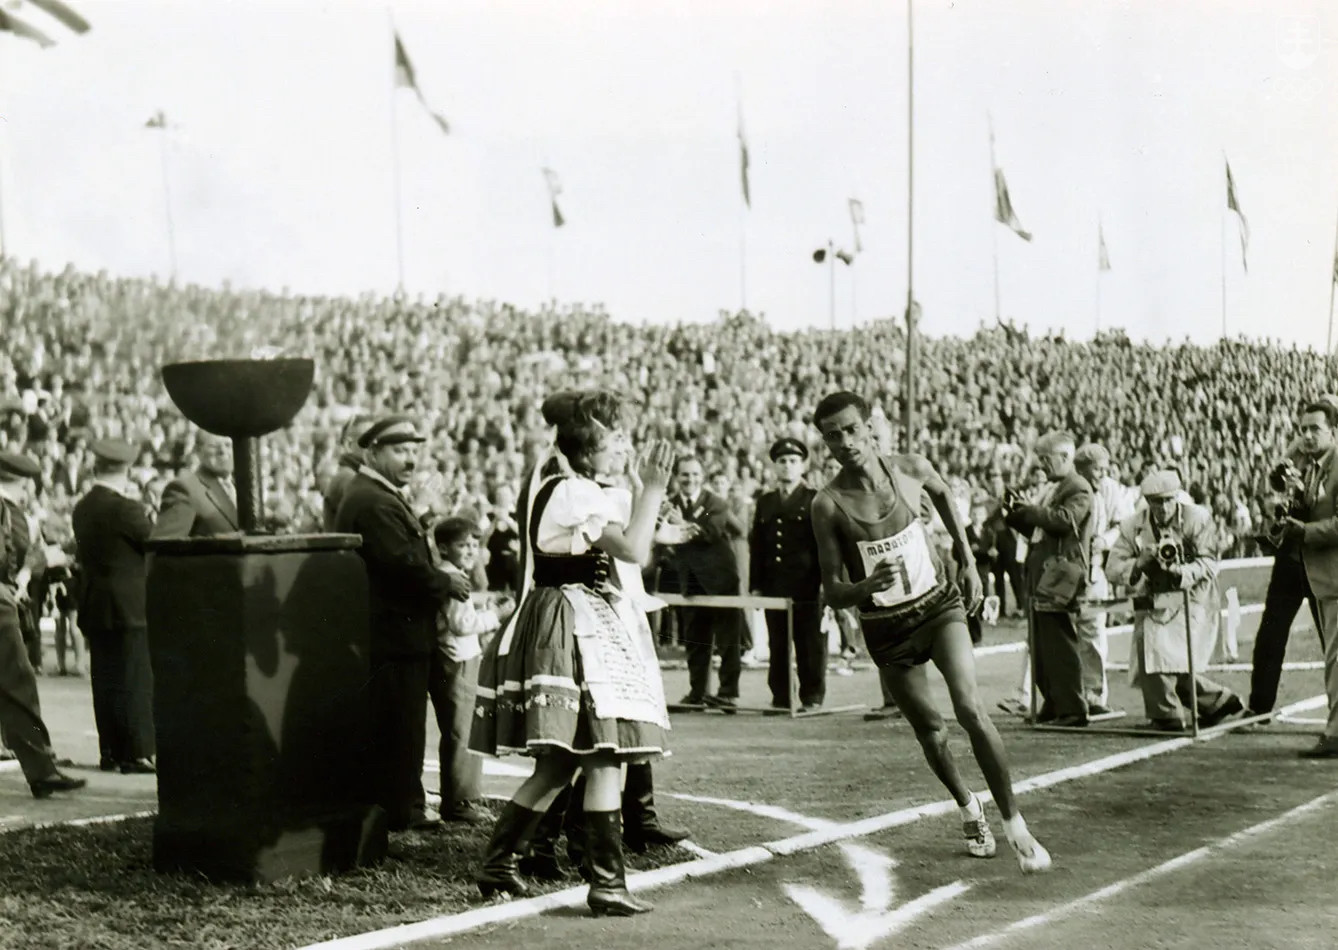 Abebe Bikila vbieha na štadión počas MMM 1961.